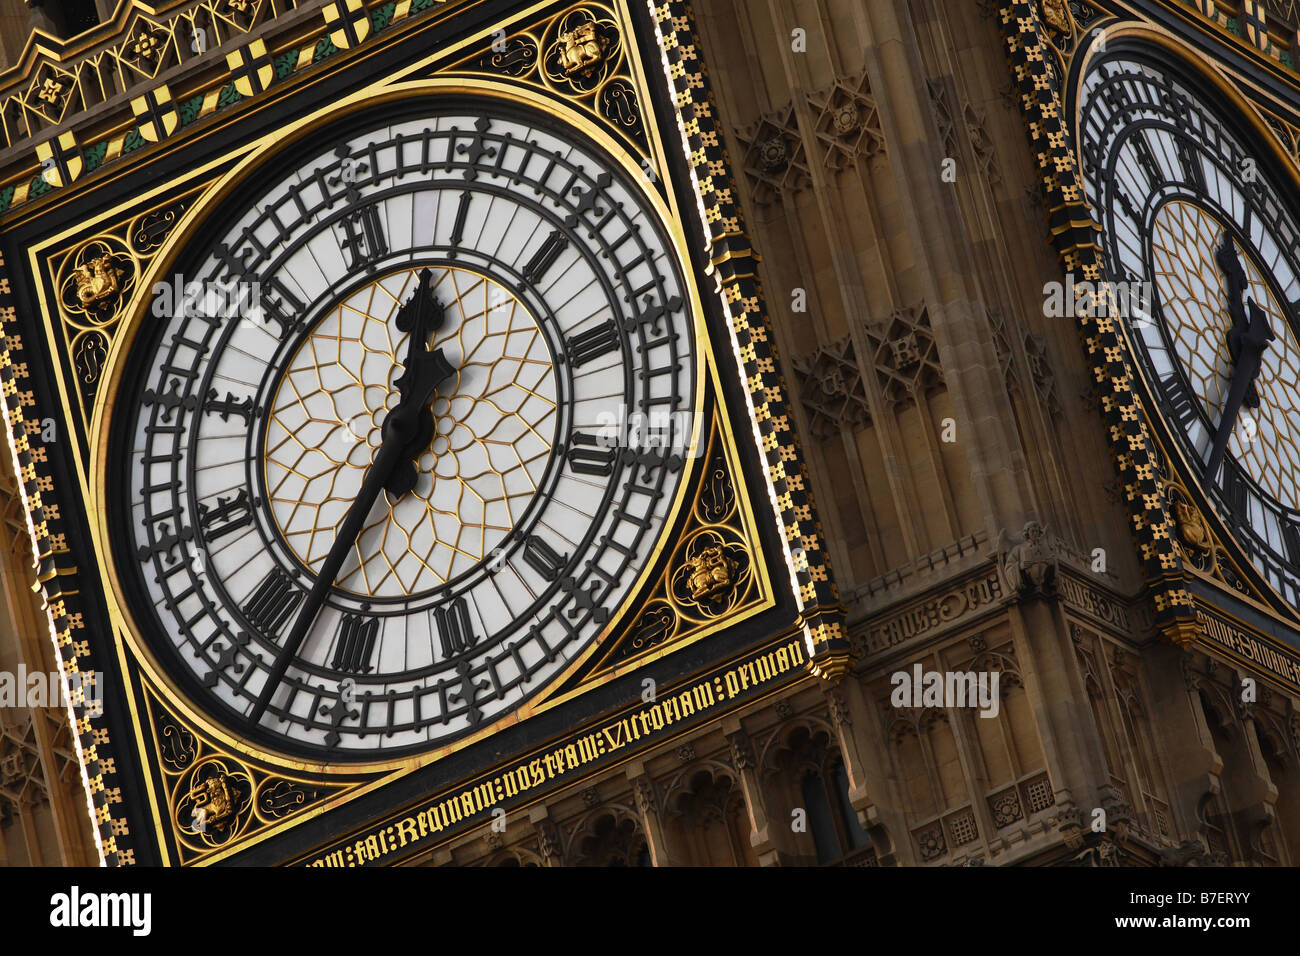 Détail de l'horloge de la Tour Elizabeth, Big Ben, chambres du Parlement Londres Royaume-Uni Banque D'Images